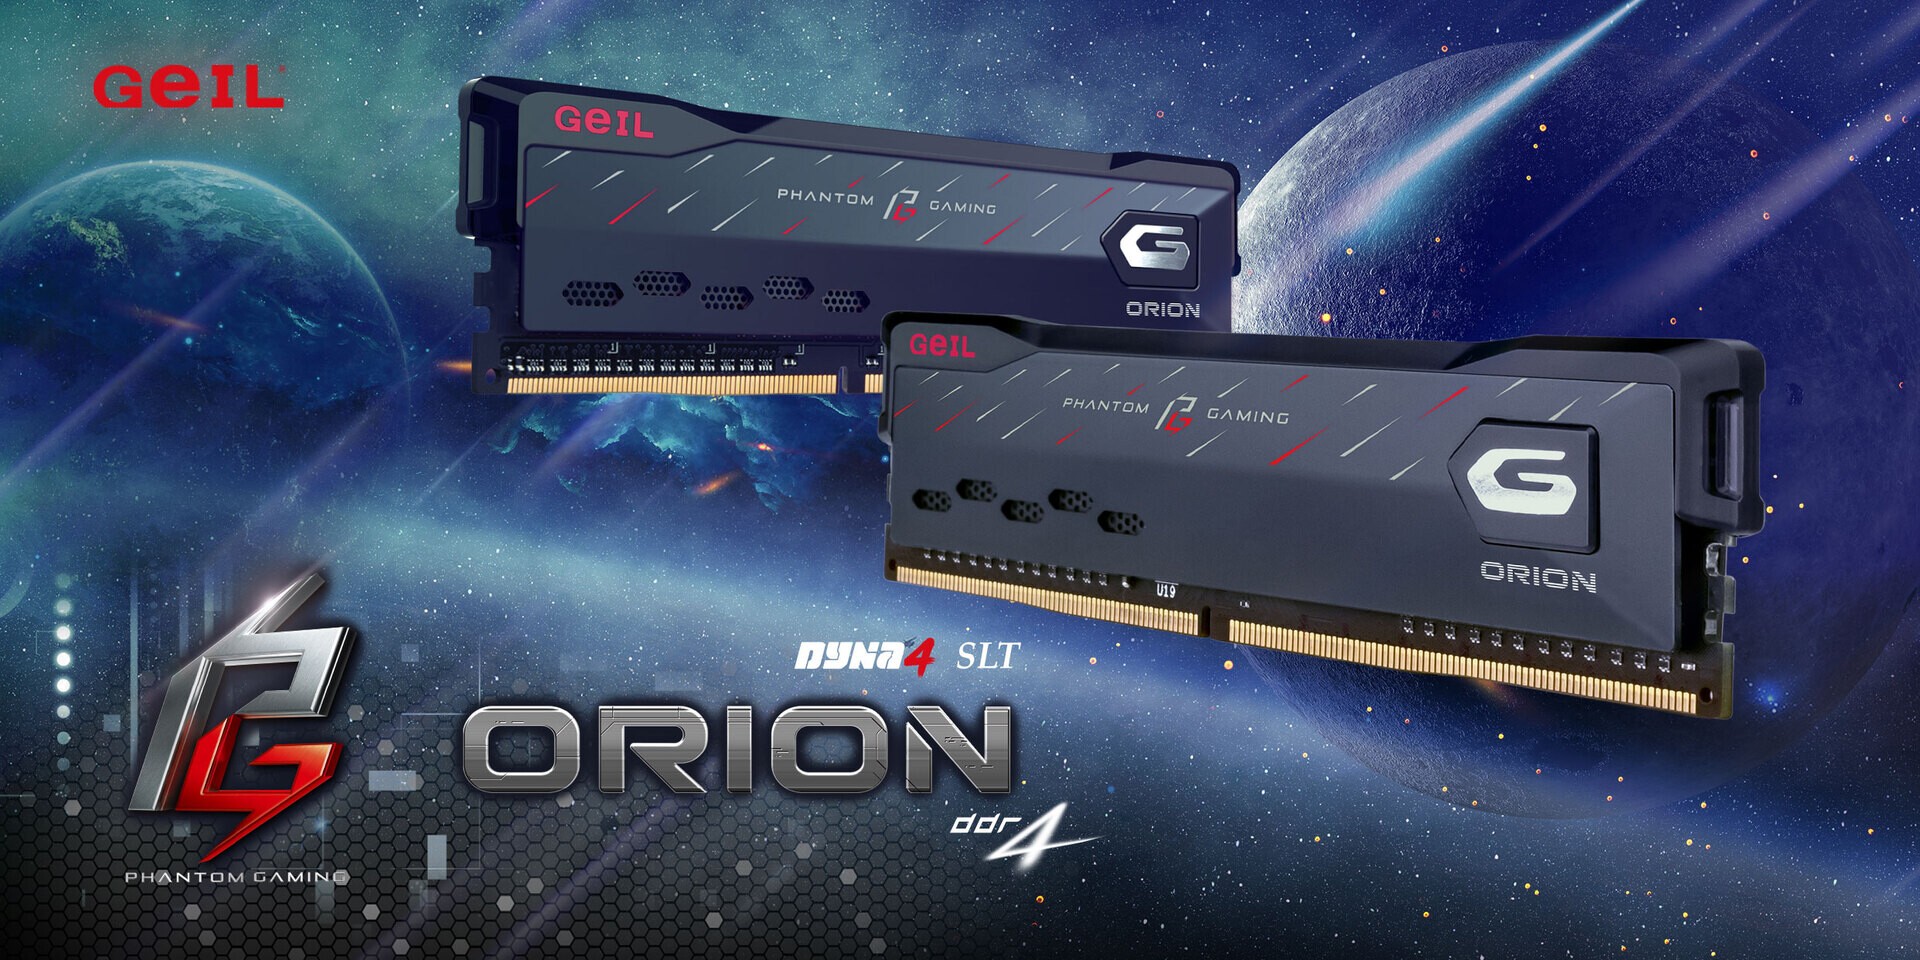 GeIL kết hợp với ASRock giới thiệu dòng bộ nhớ ORION Phantom Gaming Edition mới nhất.